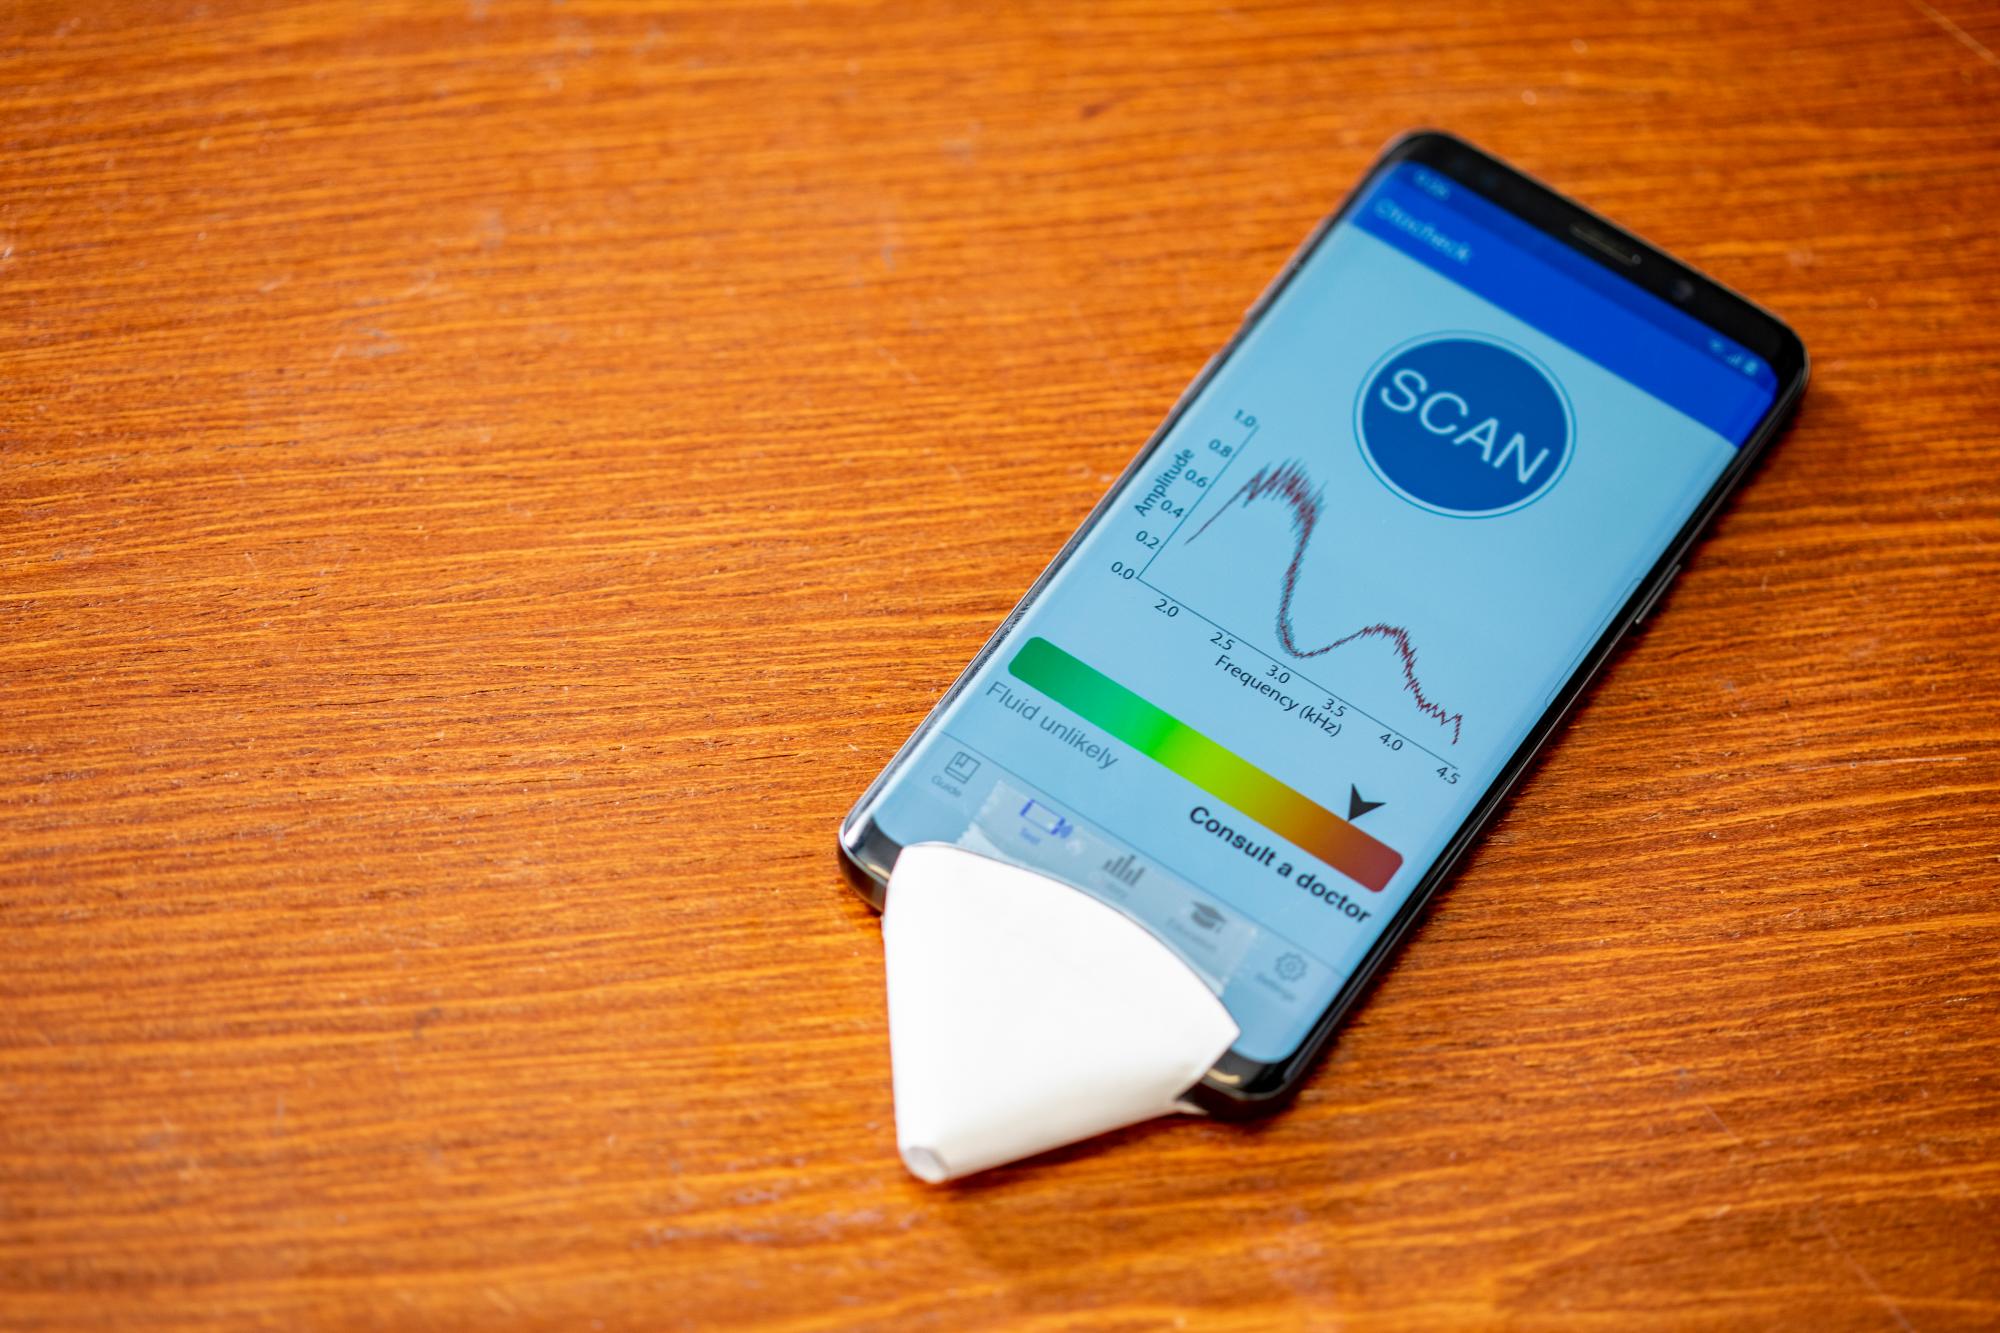 Los investigadores de UW han creado una nueva aplicación para teléfonos inteligentes que puede detectar el fluido detrás del tímpano. En la imagen el móvil con el pequeño cono de papel en la zona del micrófono.